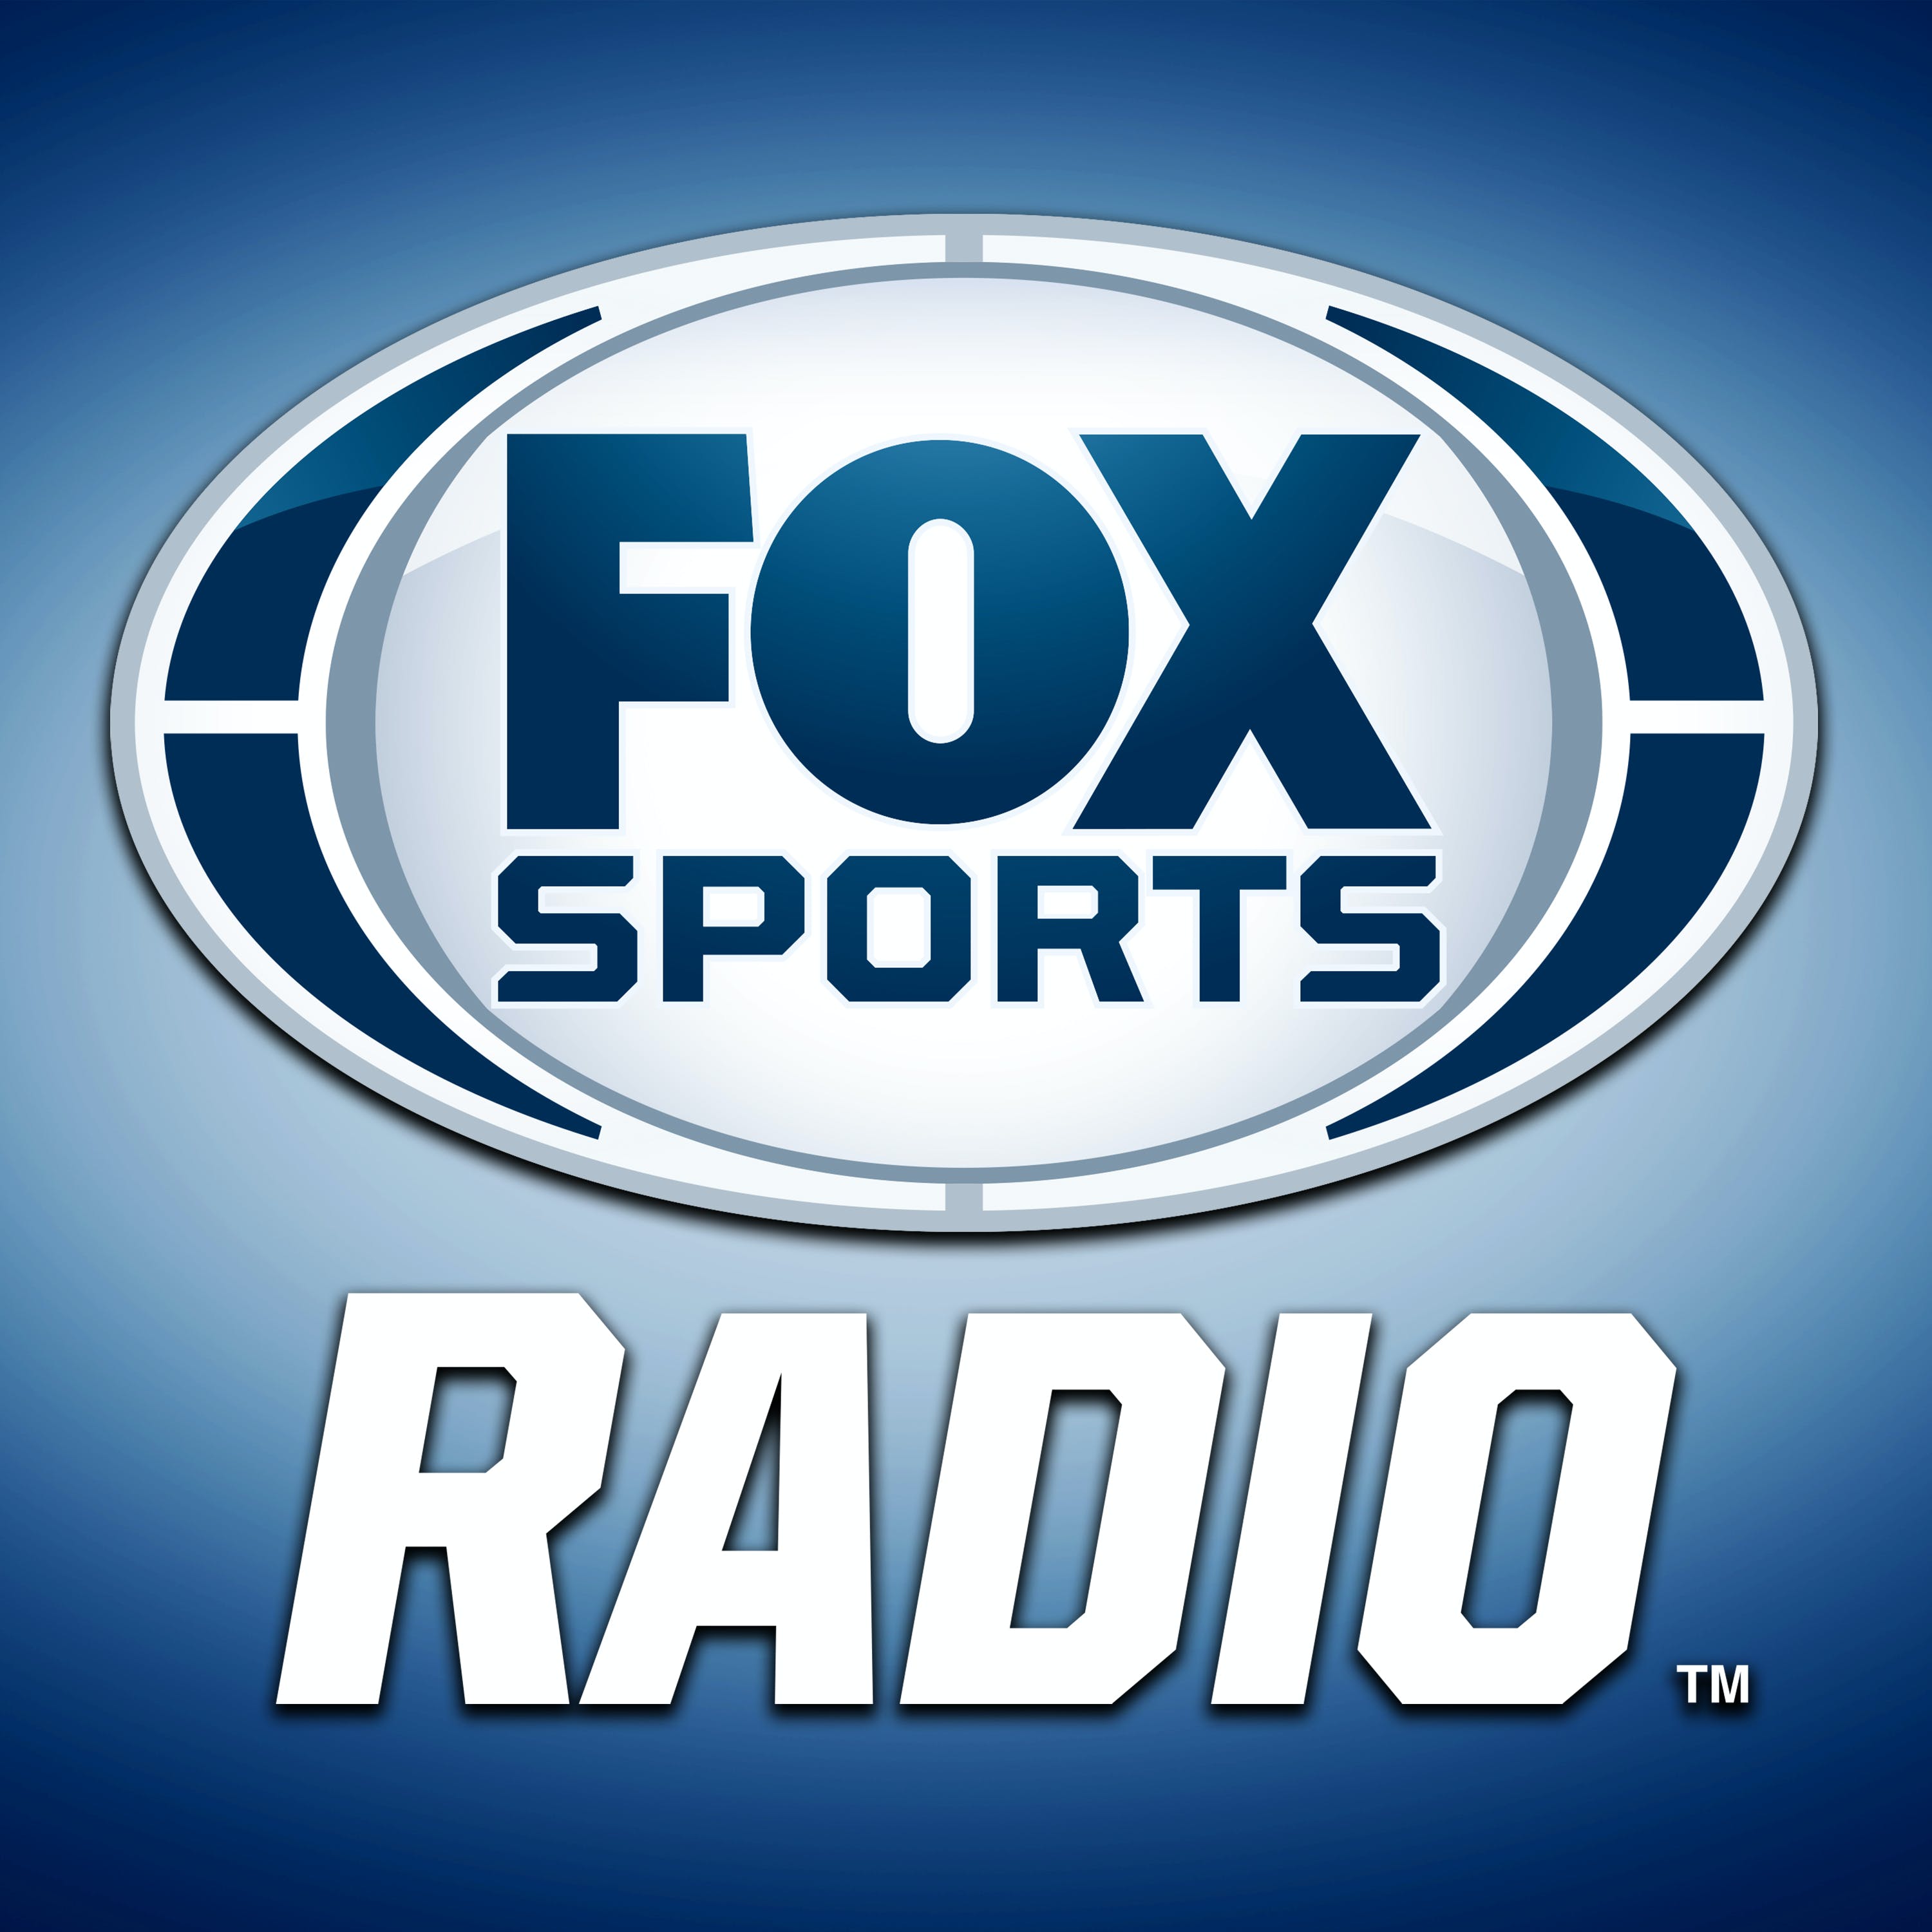 04/03/2021 - FOX Sports Saturday with Steve Hartman and Geoff Schwartz